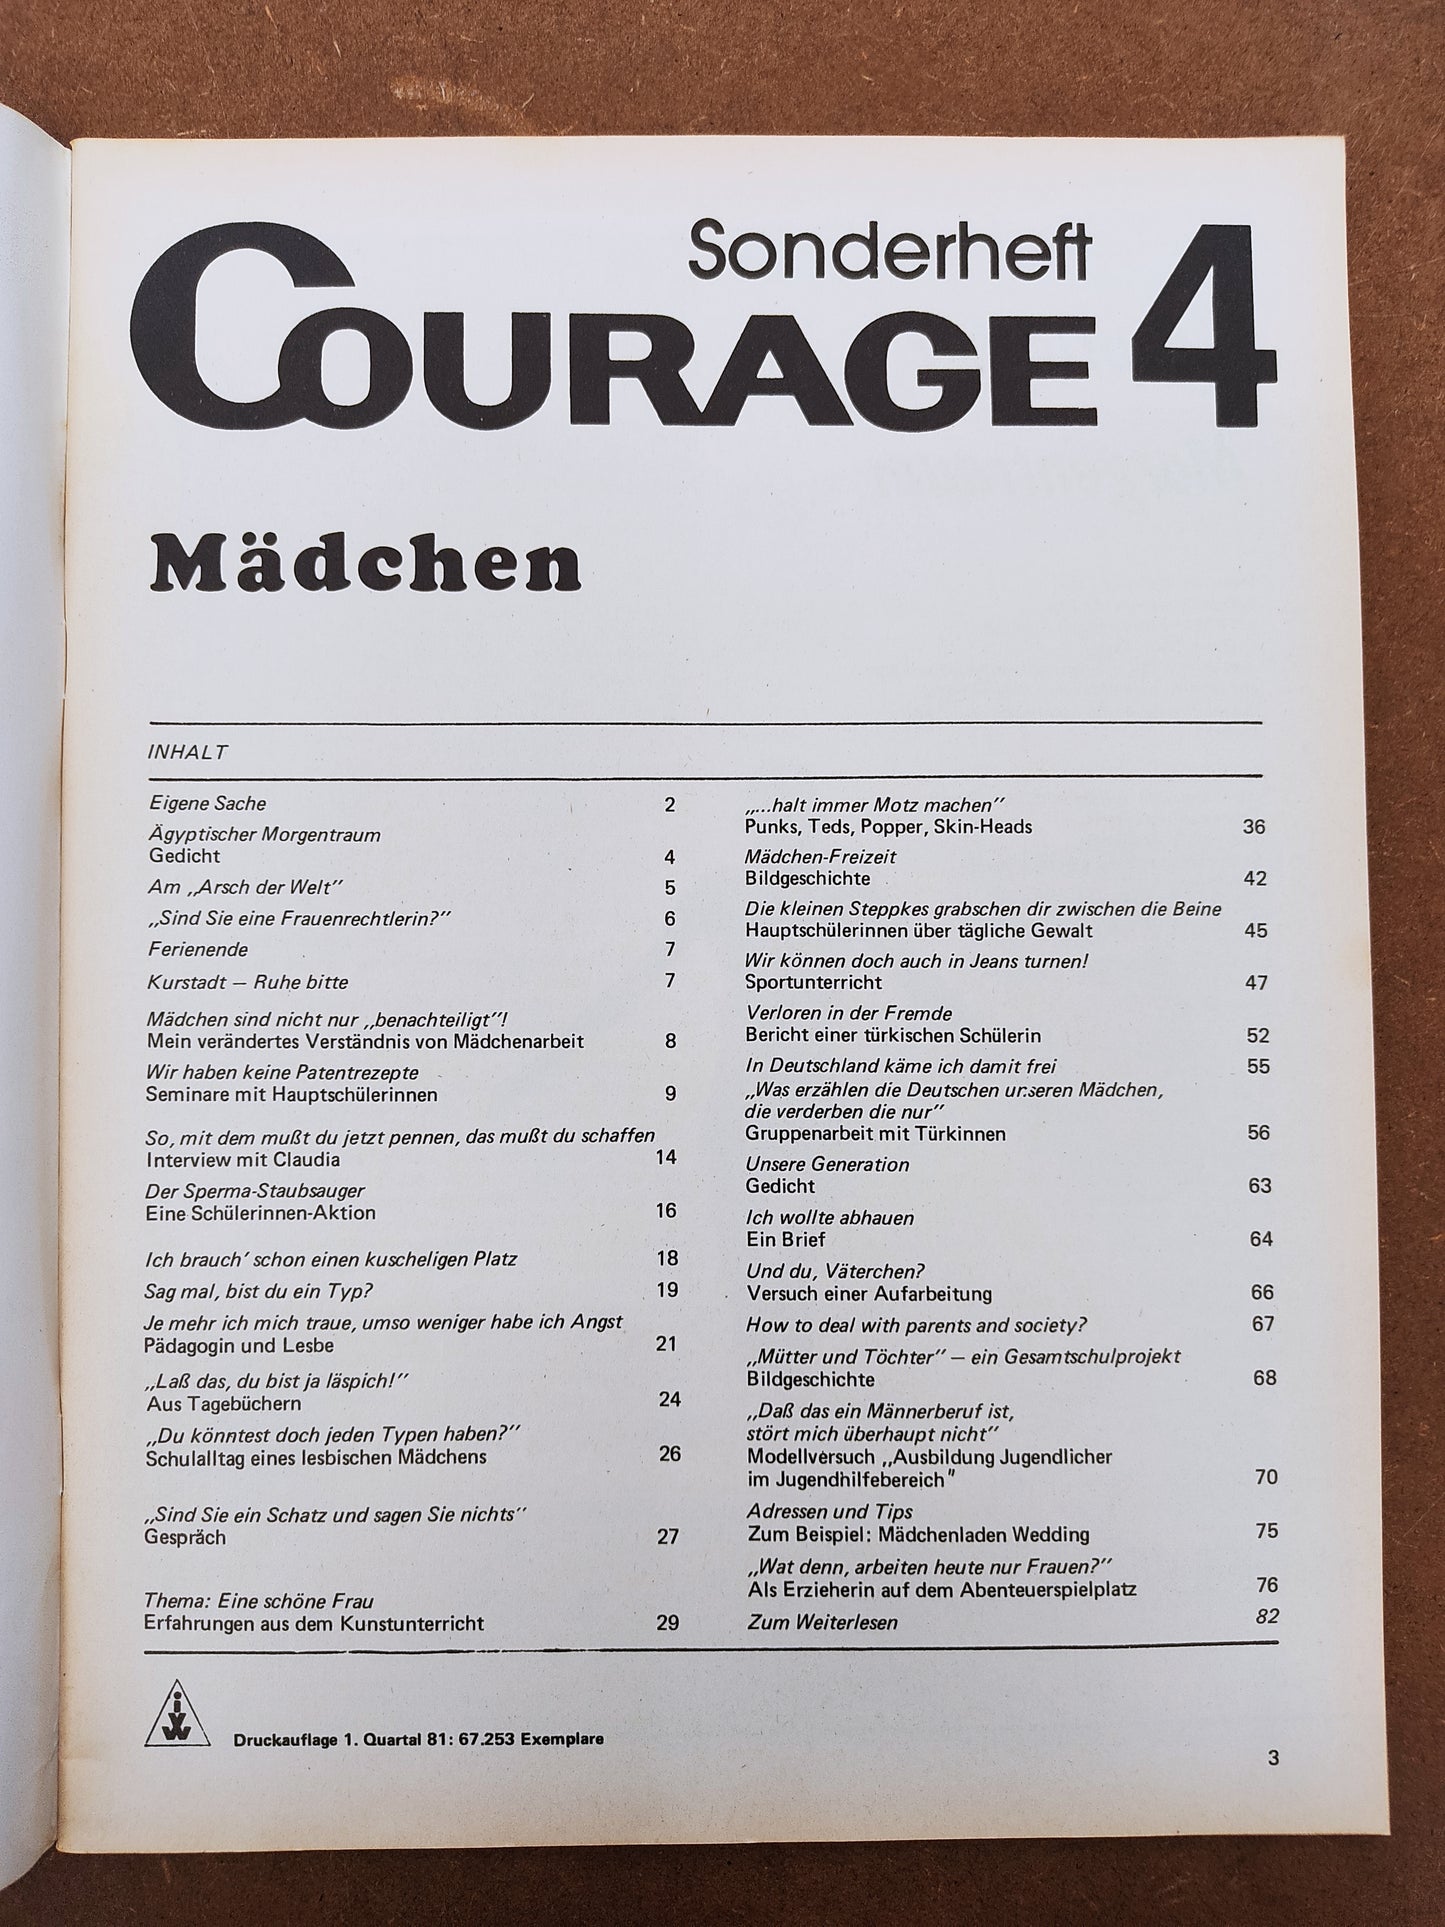 Courage #4 (Sonderheft) Mädchen